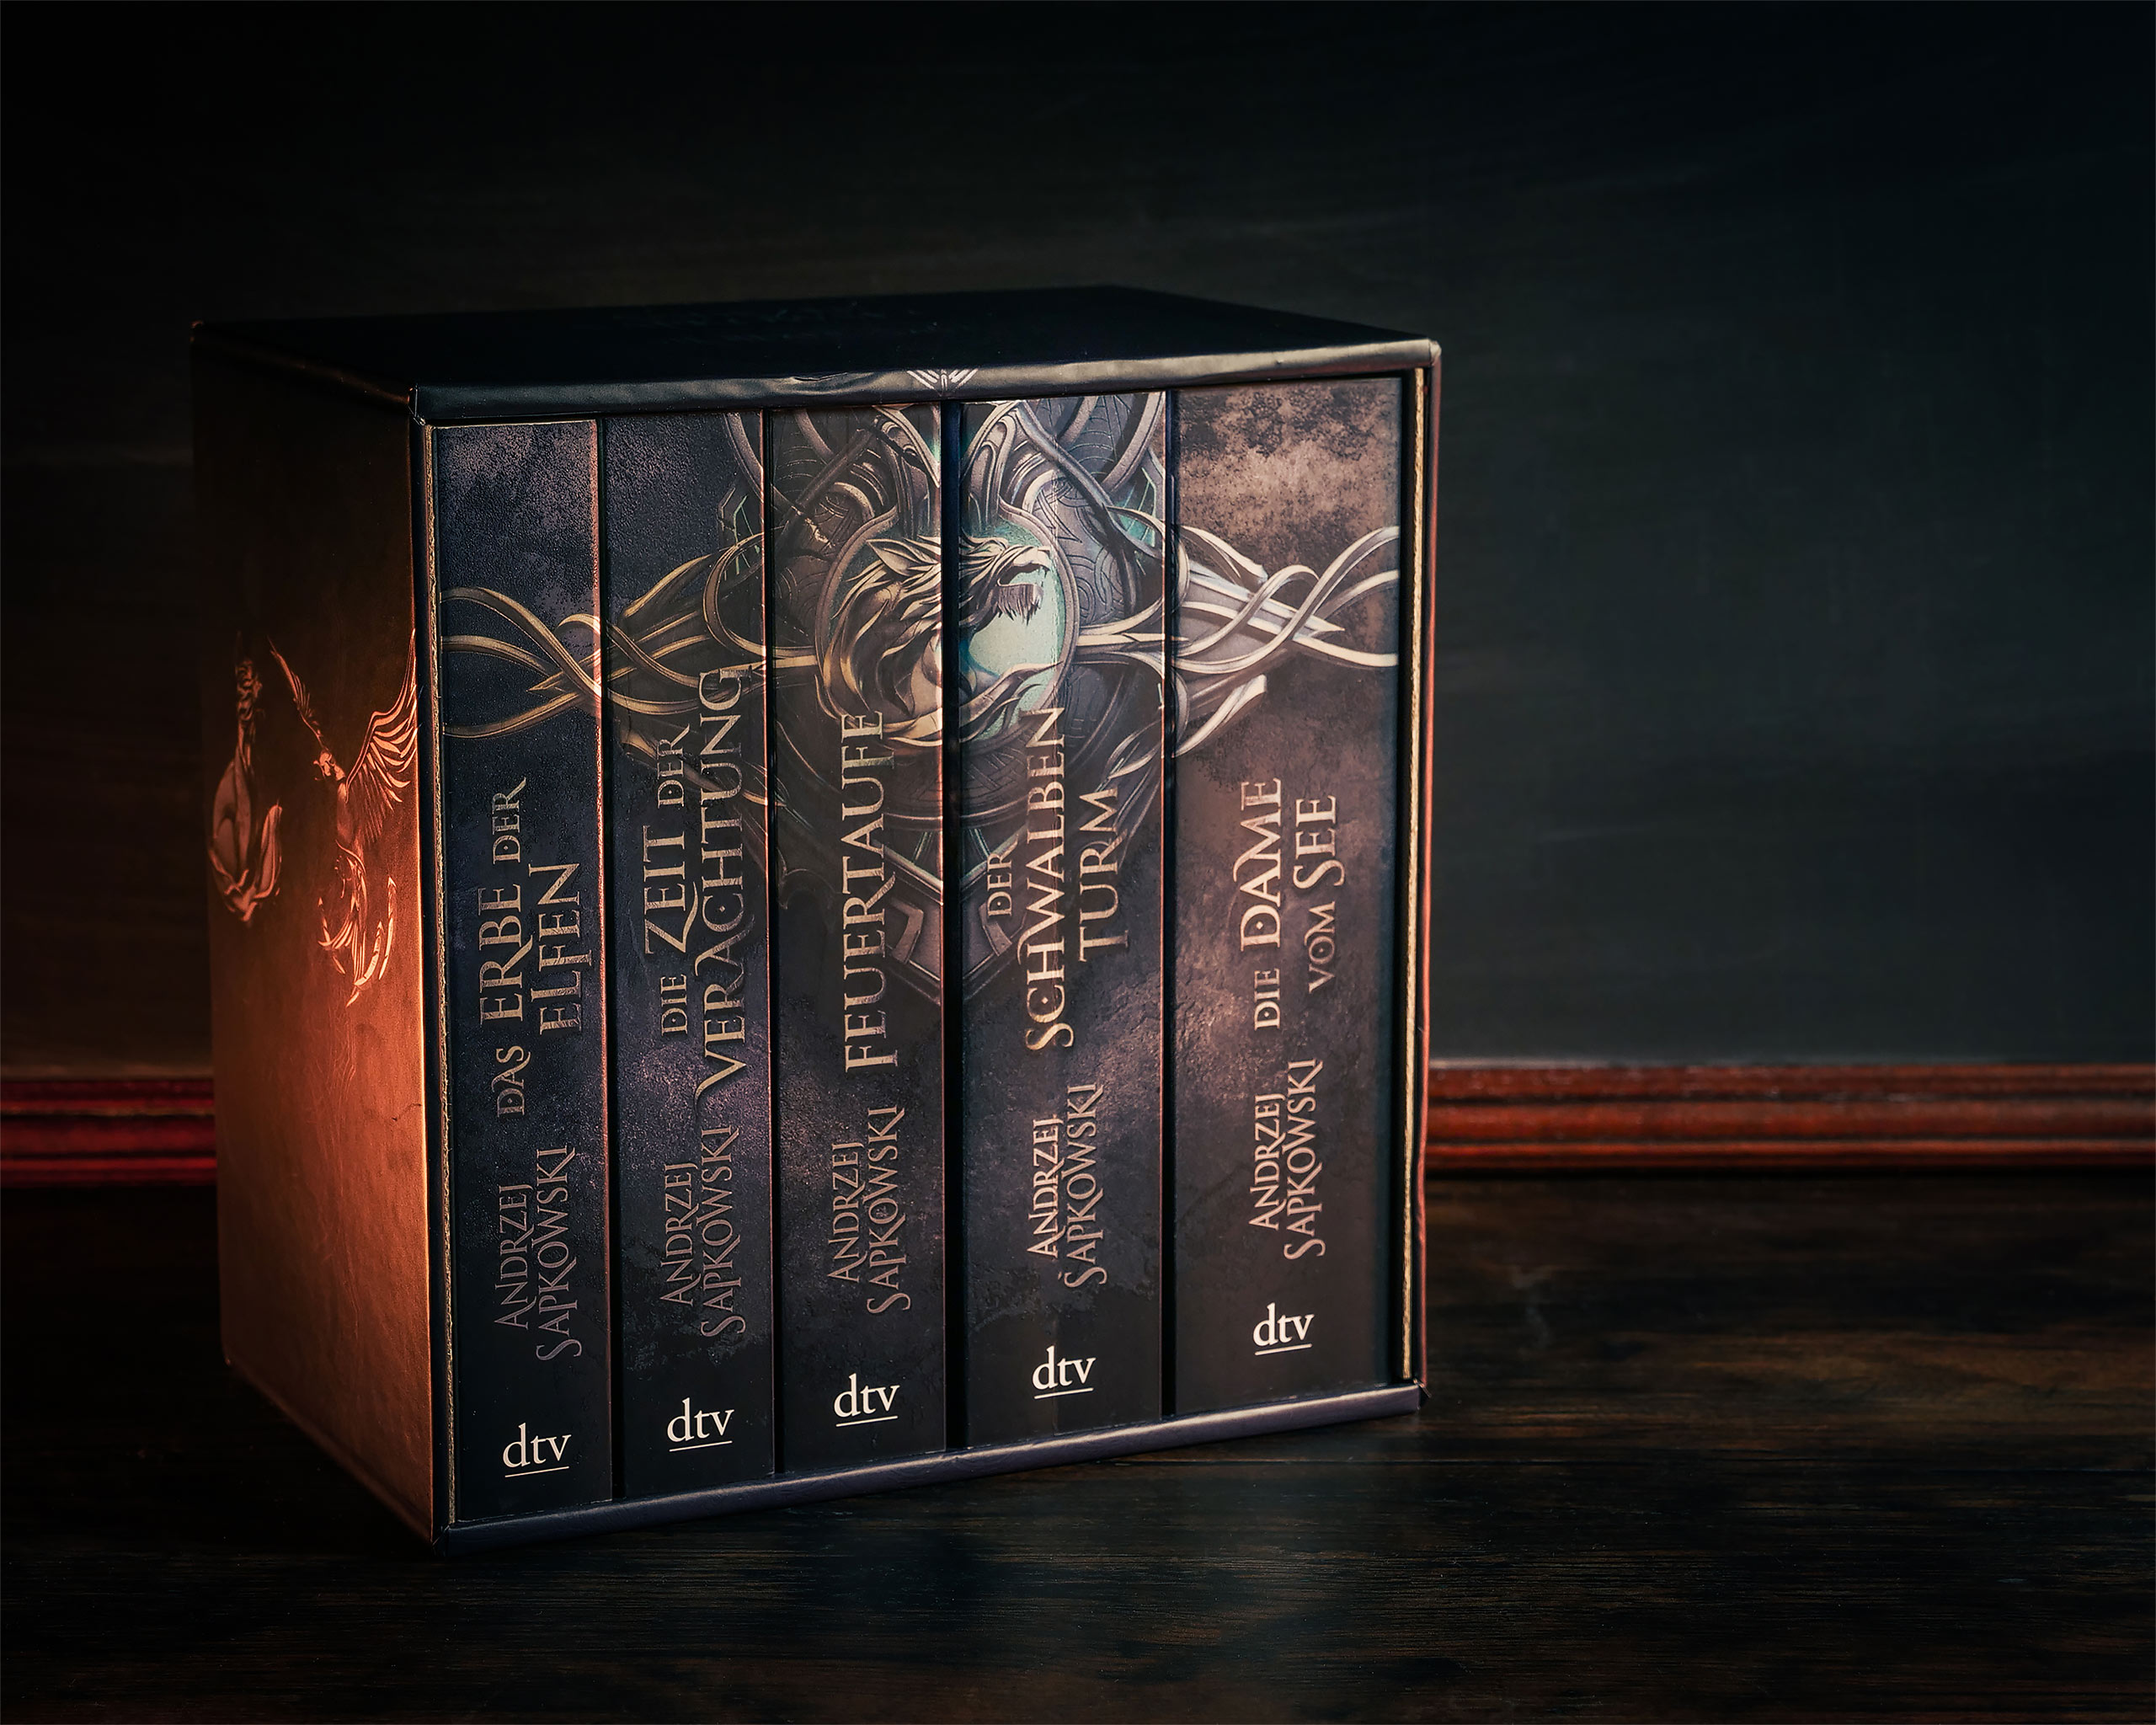 De 5 delen van de Witcher Saga in een box